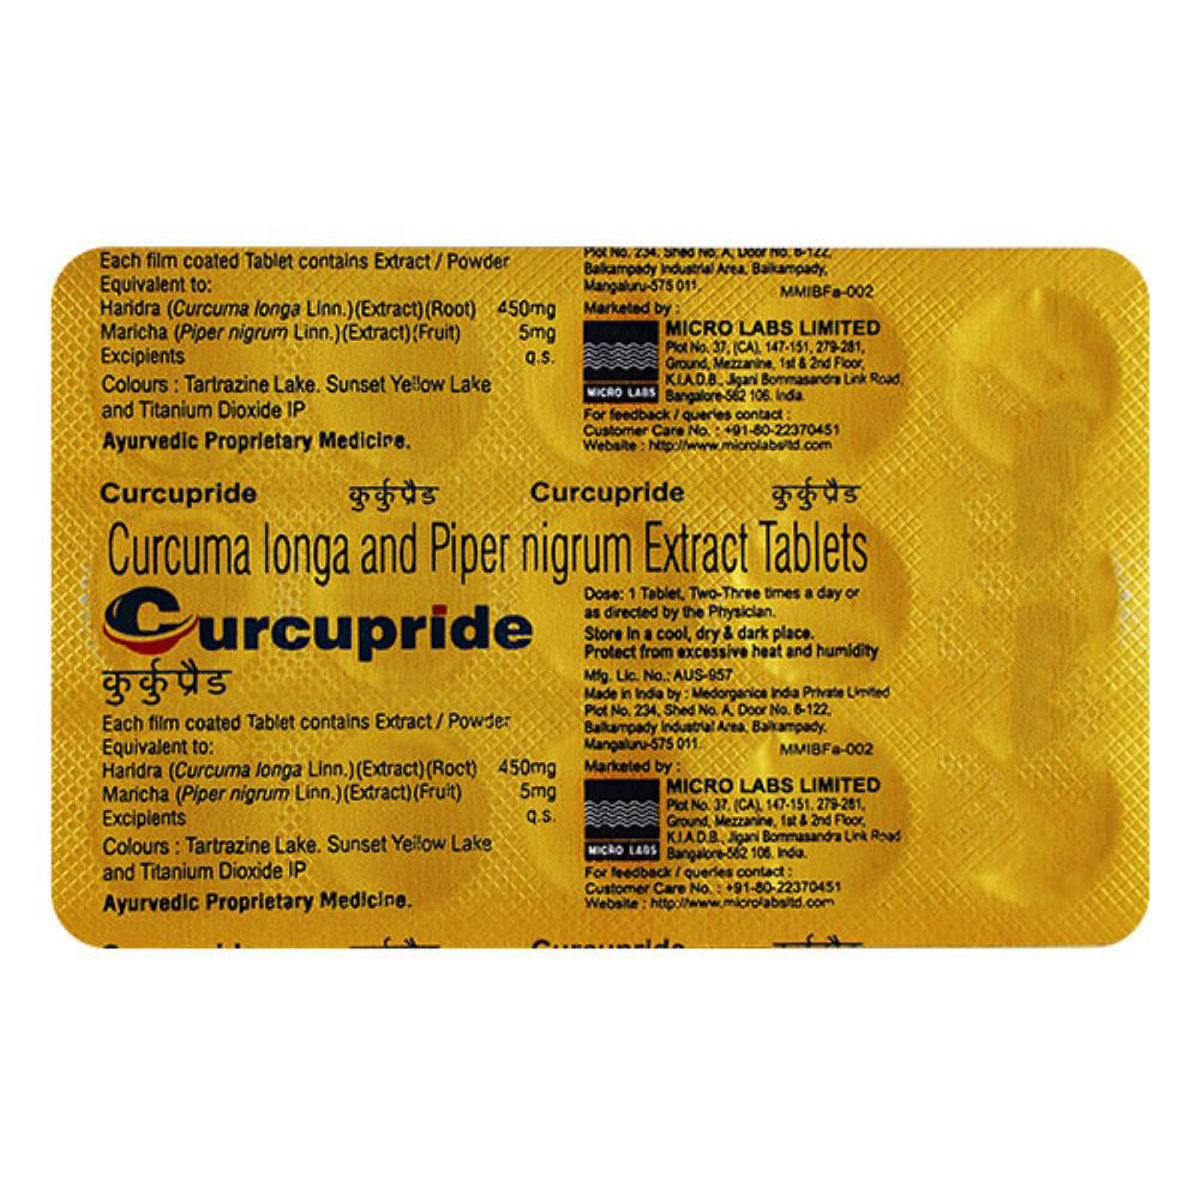 Buy Micro Labs Curcupride, 15 Tablets Online